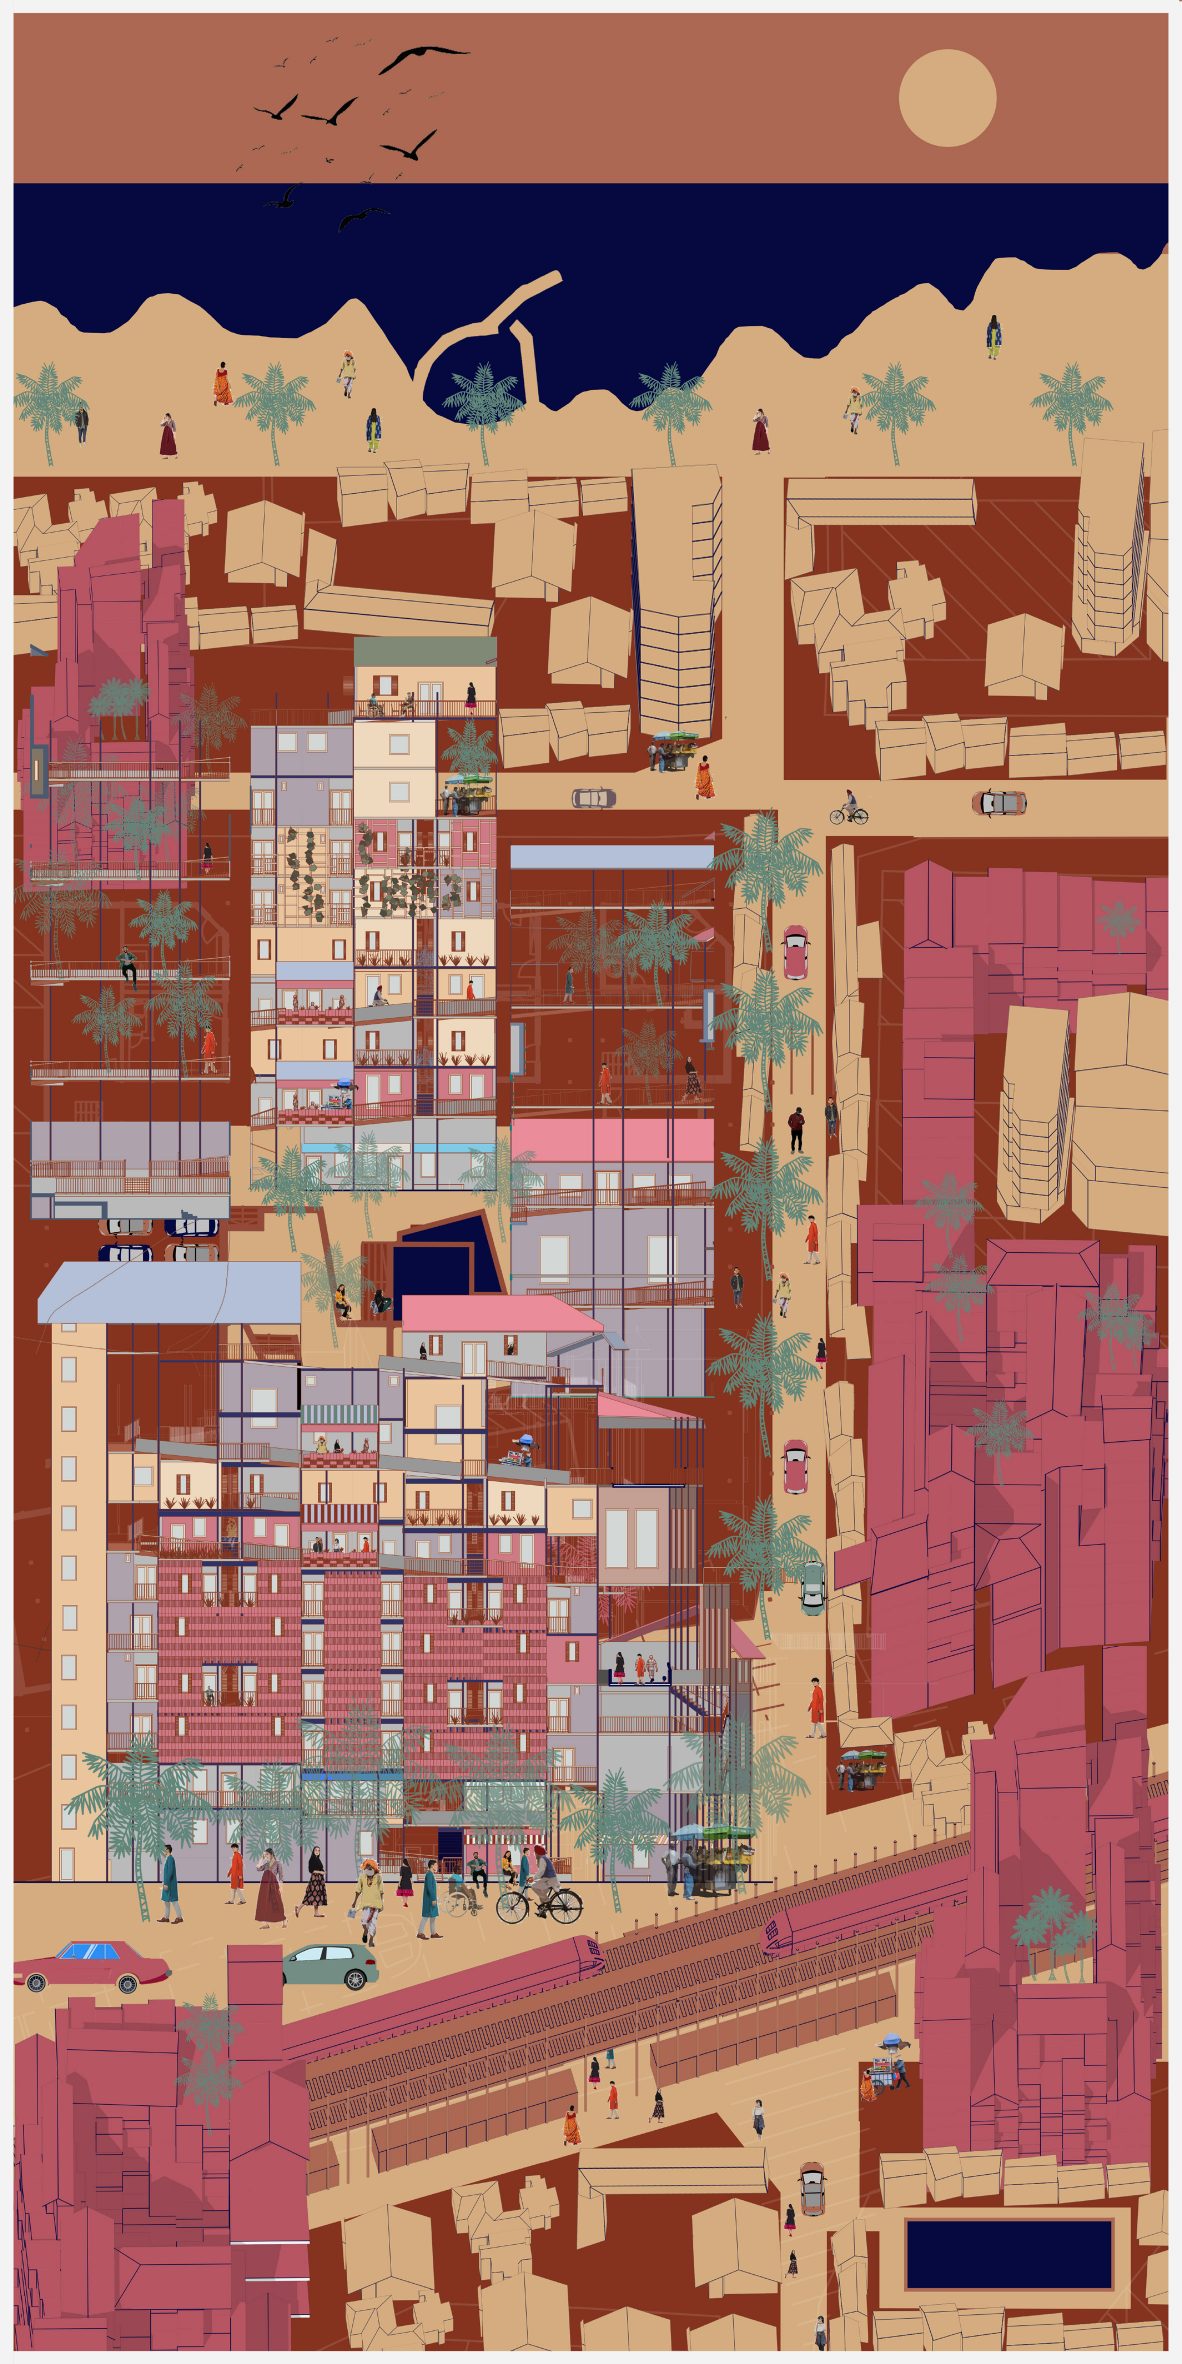 Illustration of urban housing scheme